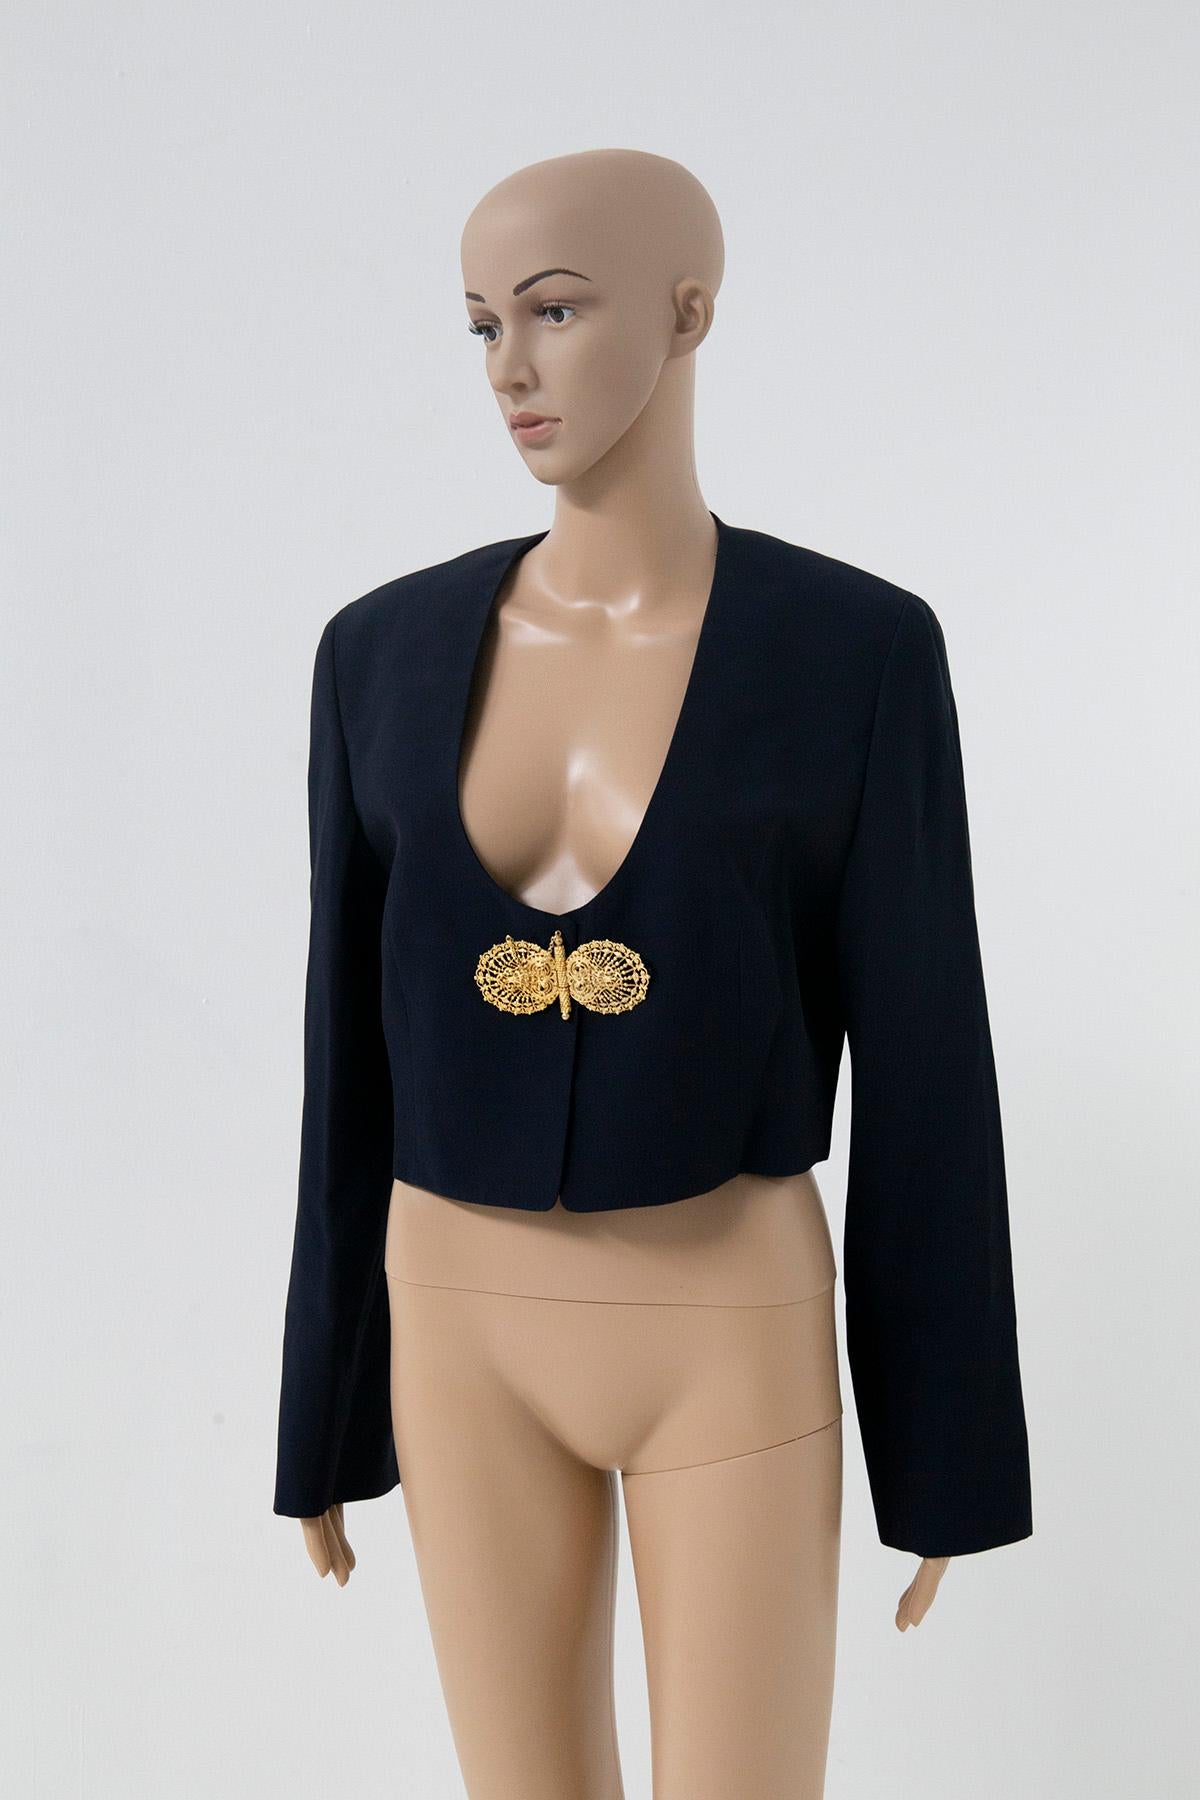 Black Gianfranco ferrè Studio 001 Cropped Jackets with jewel